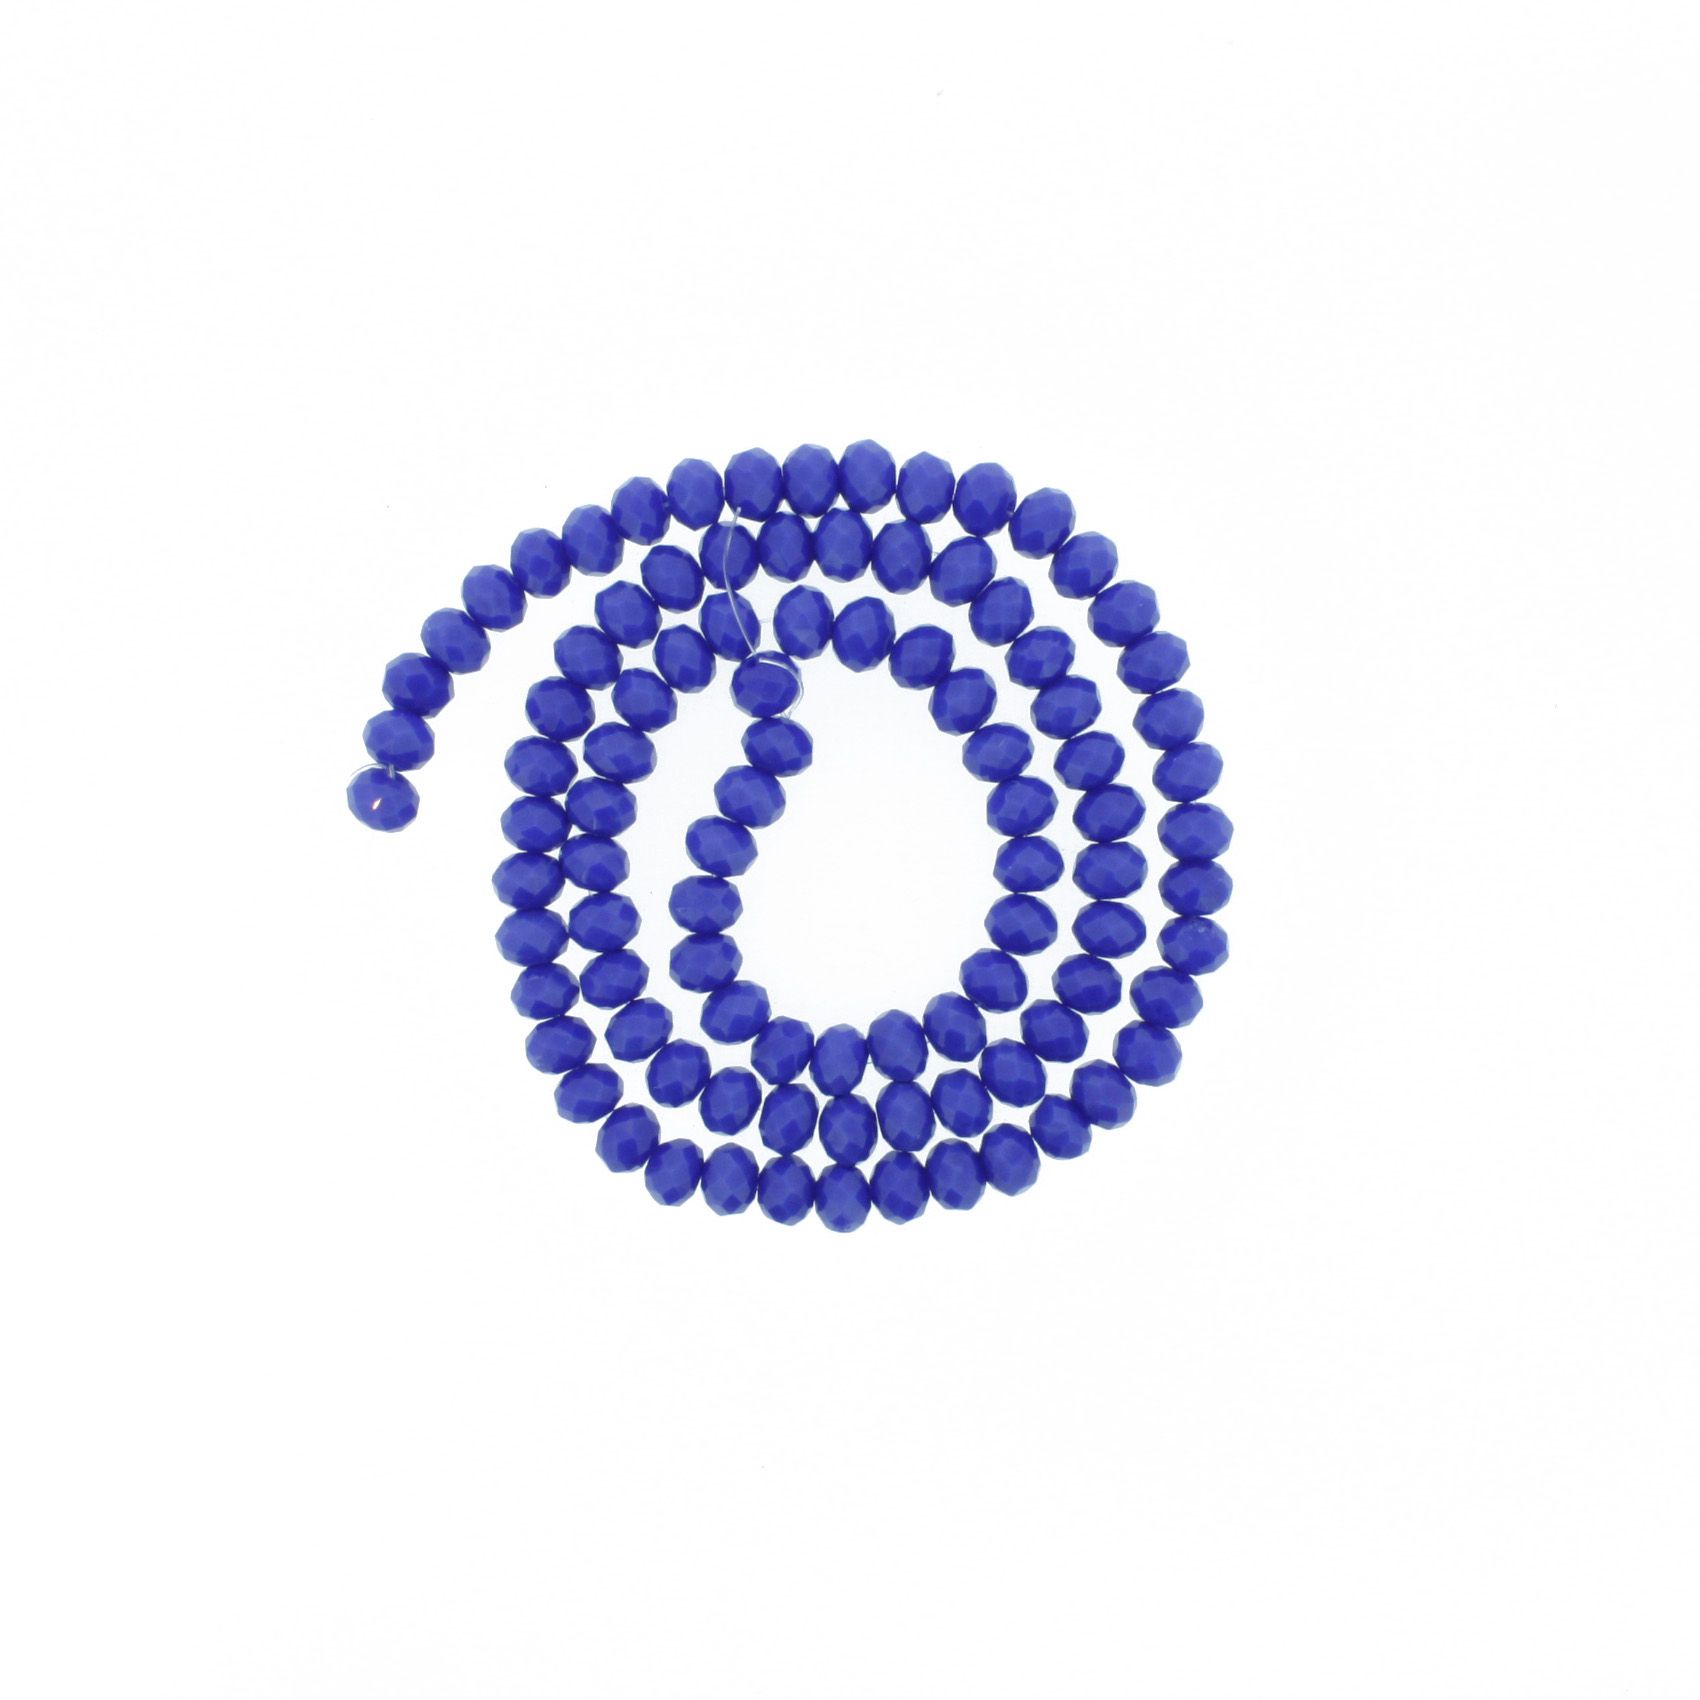 Fio de Cristal - Flat® - Azul Royal - 6mm - Stéphanie Bijoux® - Peças para Bijuterias e Artesanato